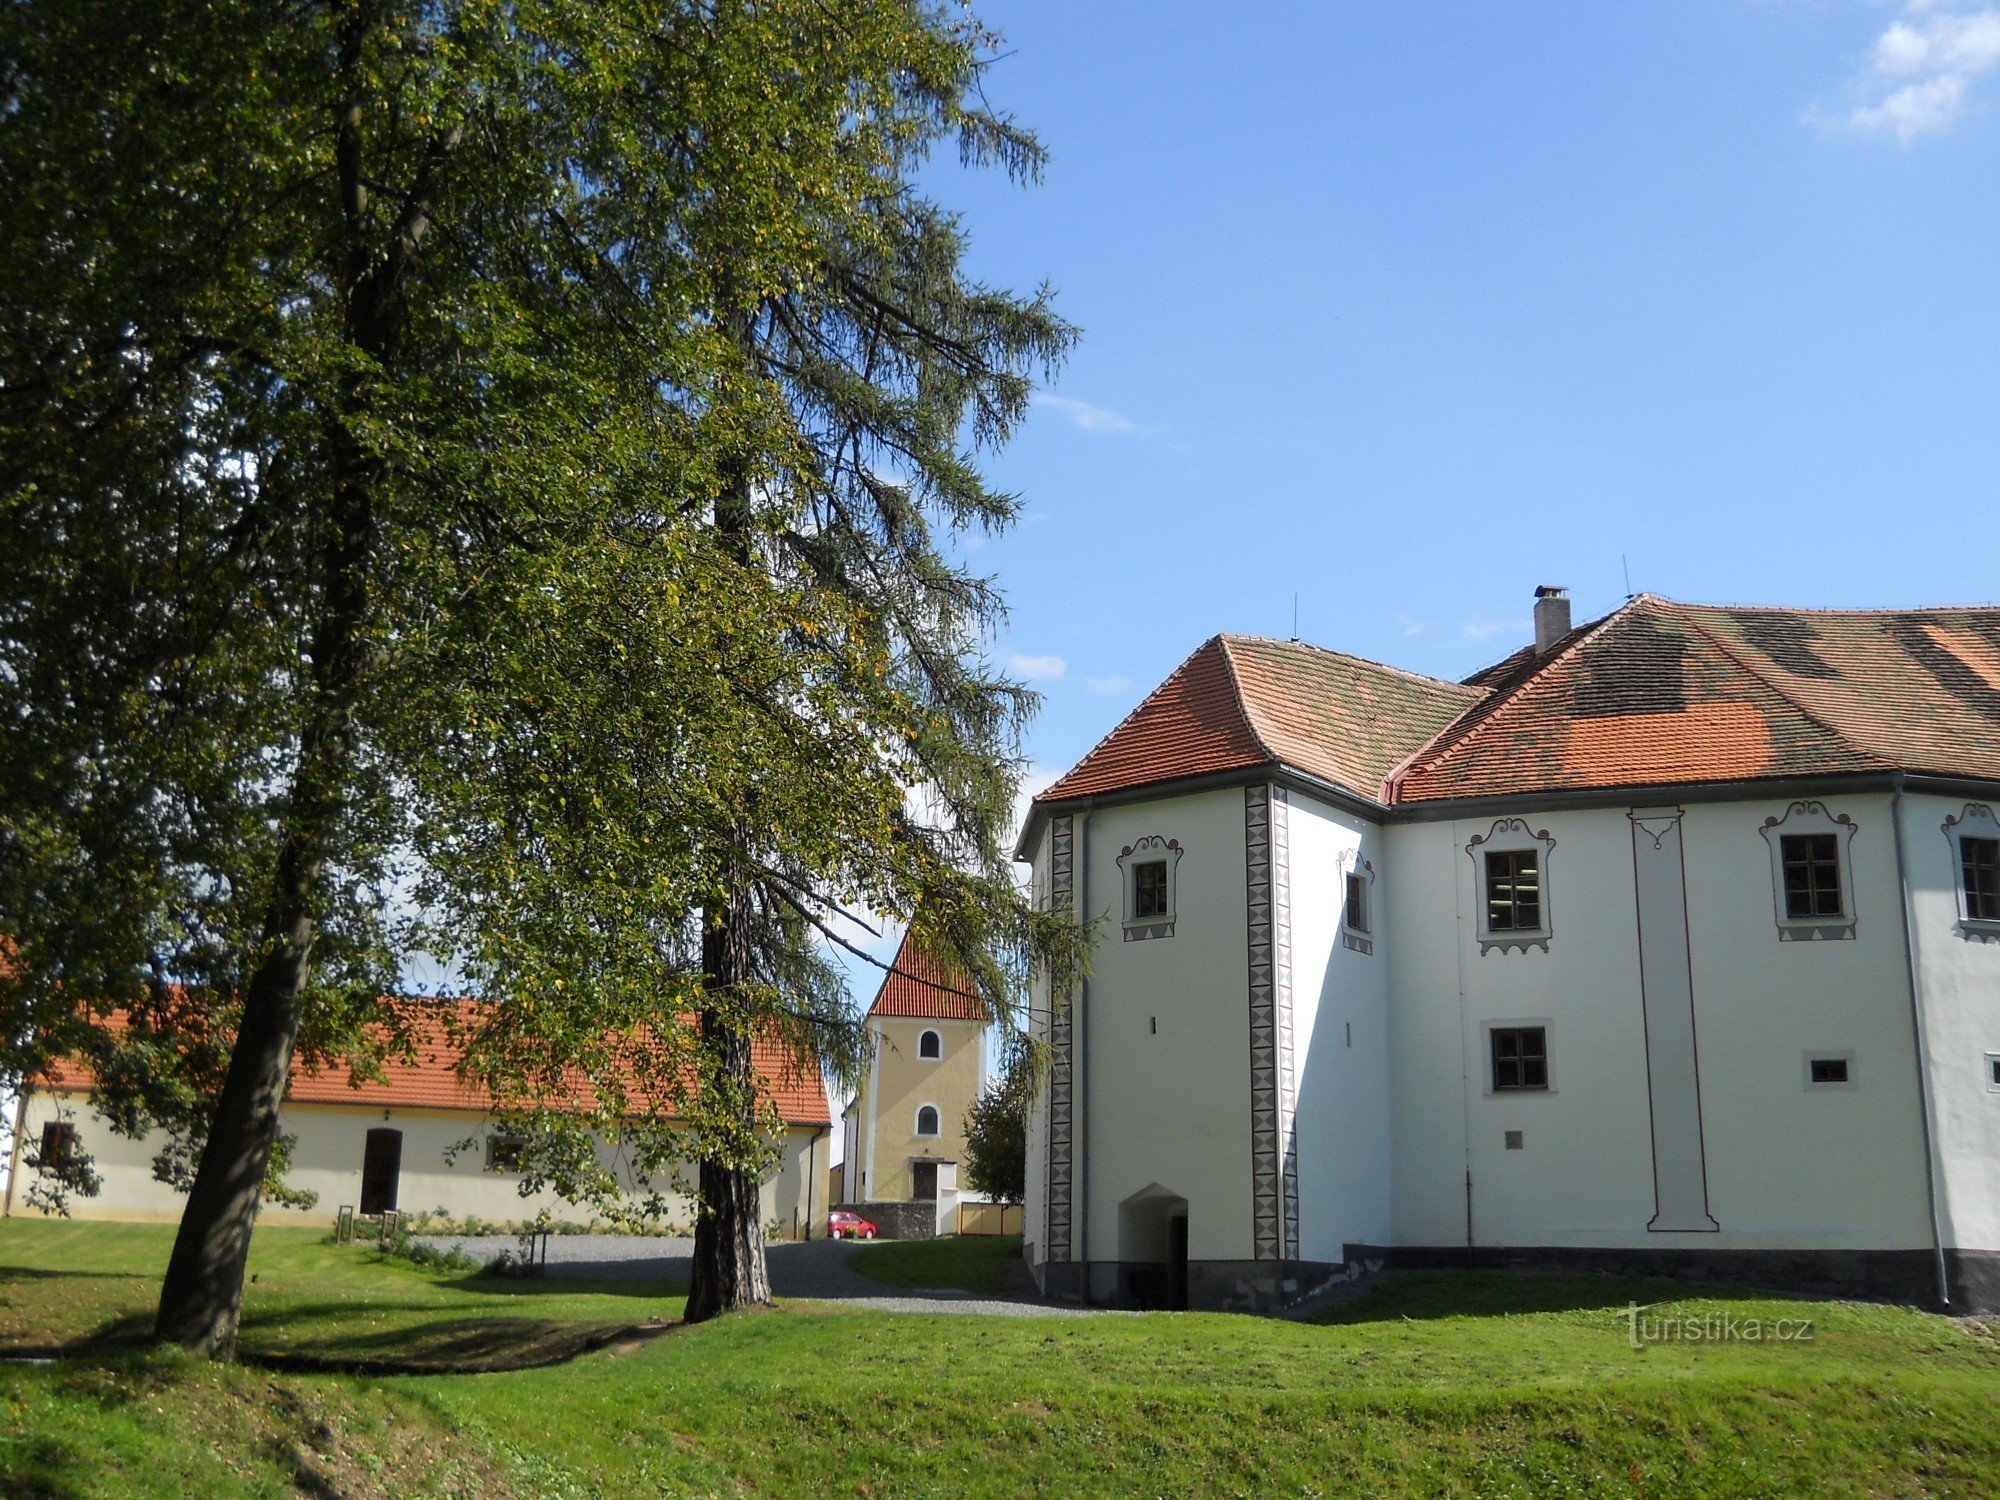 Chanovice slott